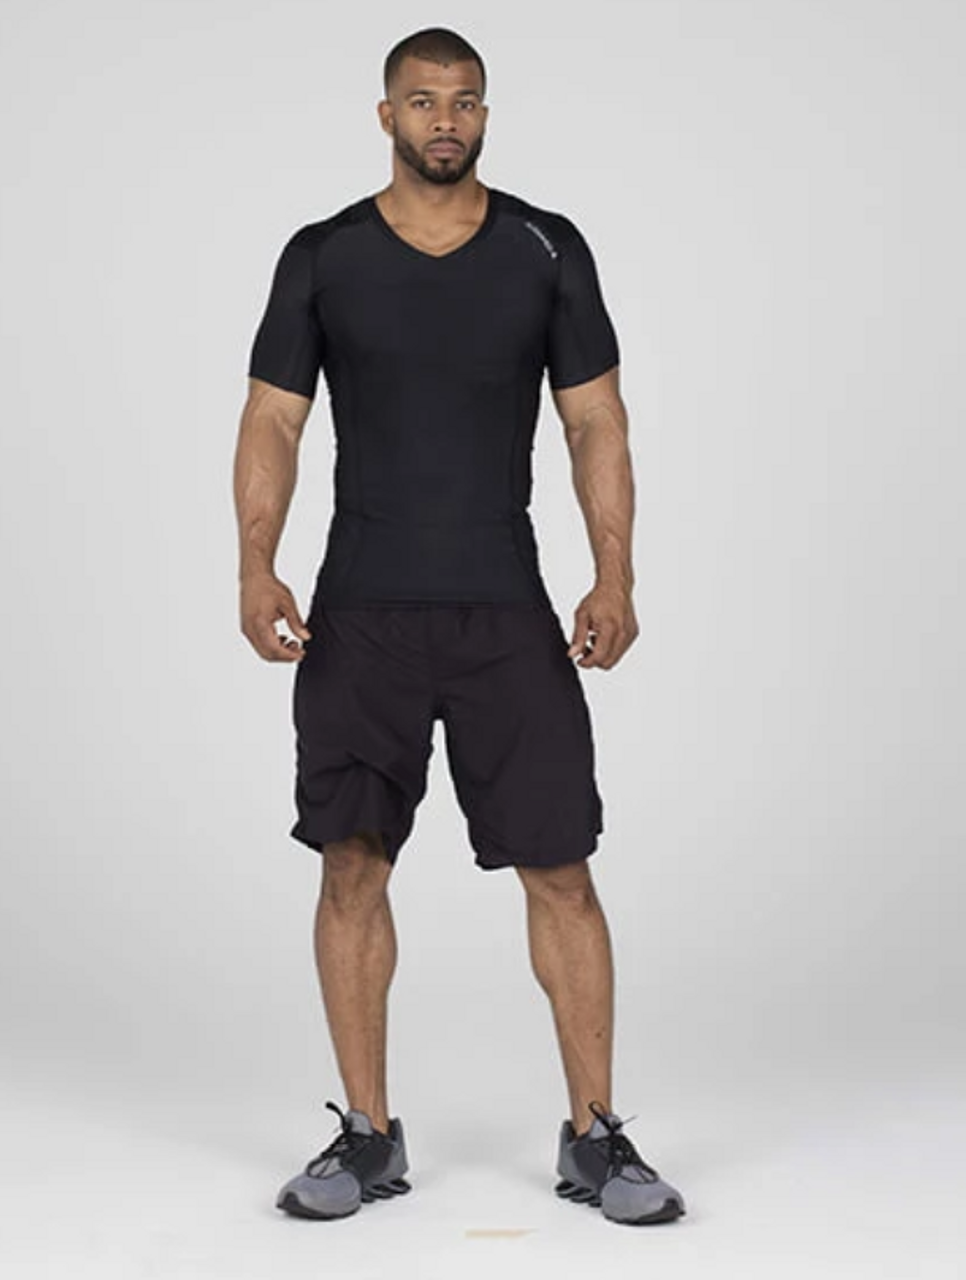 Men's Zipper Posture Shirt 2.0 // Black (L) - AlignMed Athletic